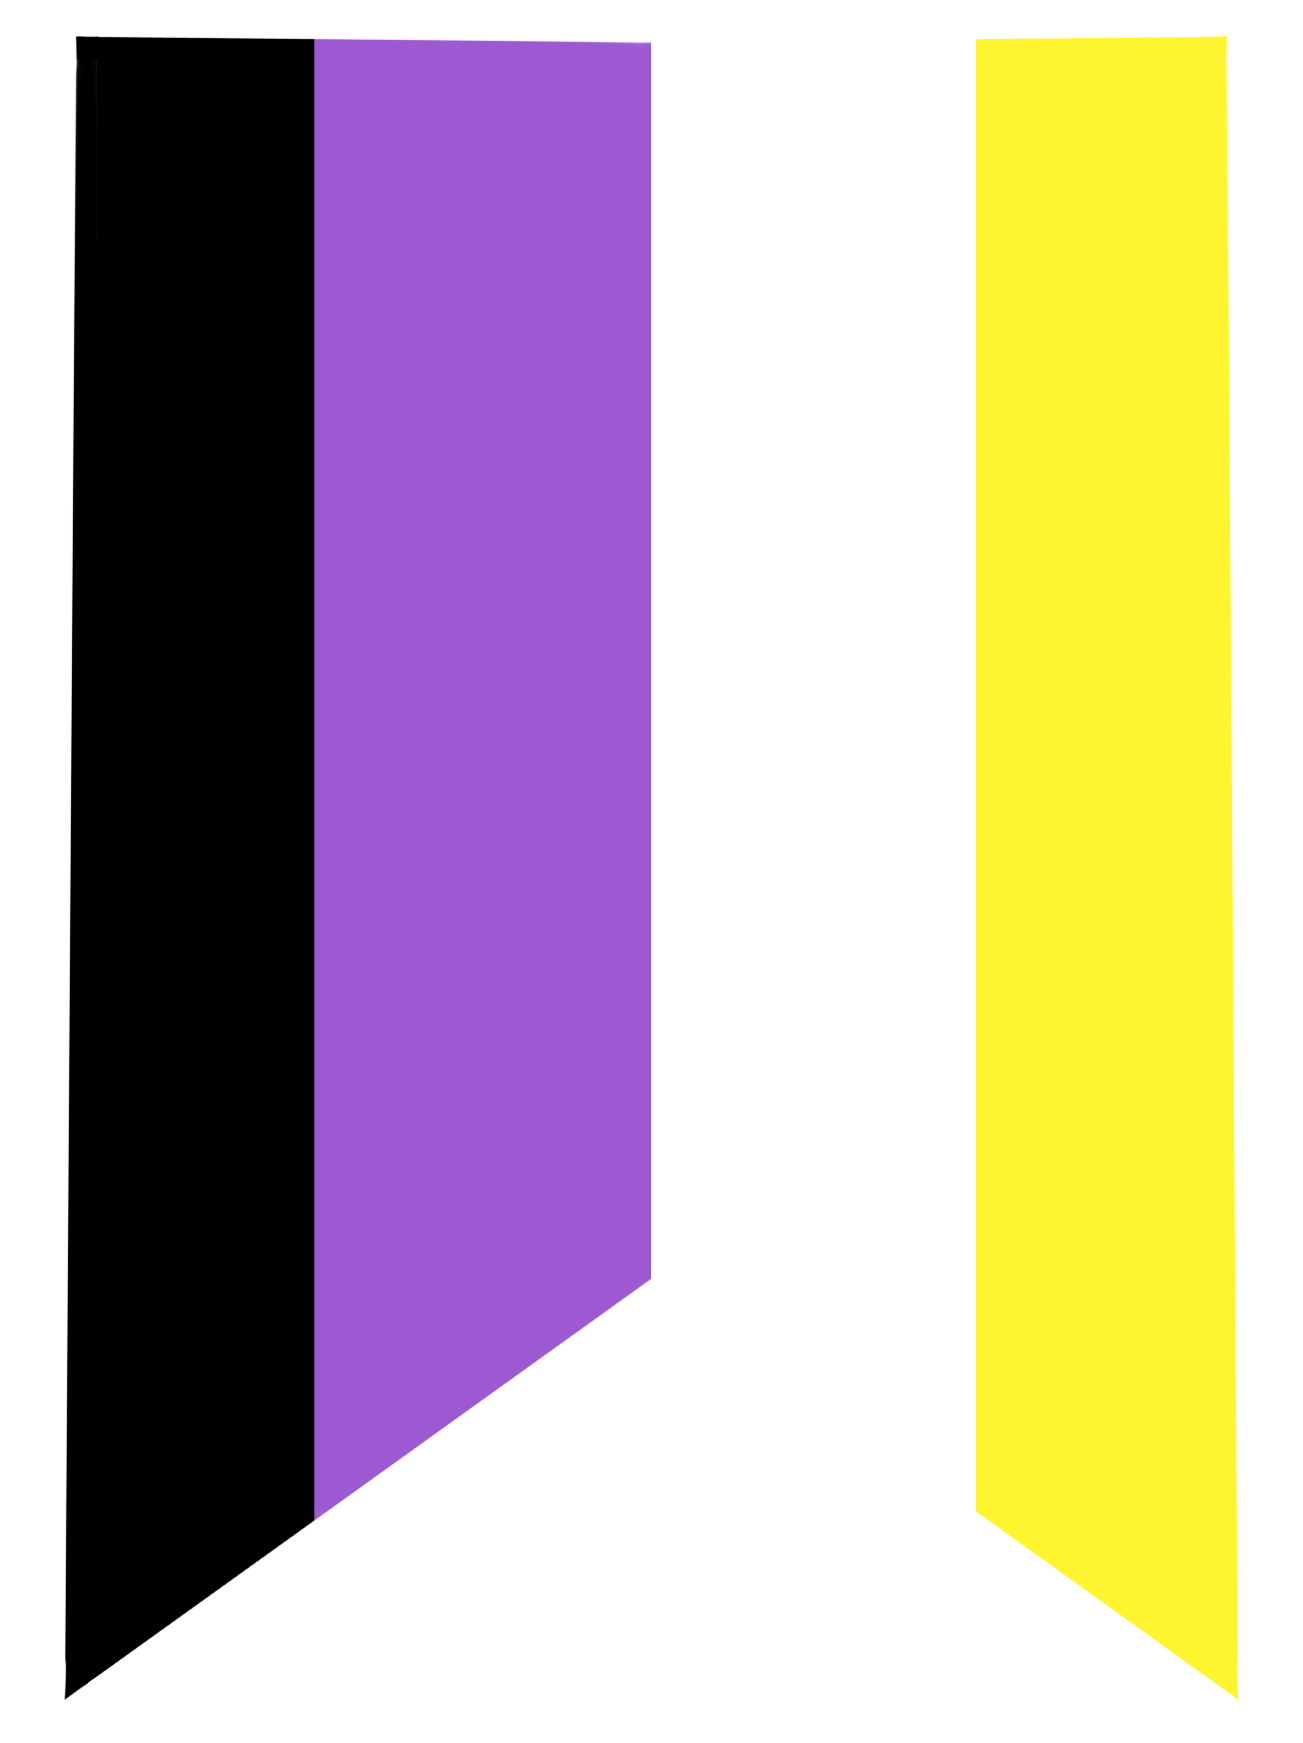 lgbtqia+ non-binary pride flag in bookmark style